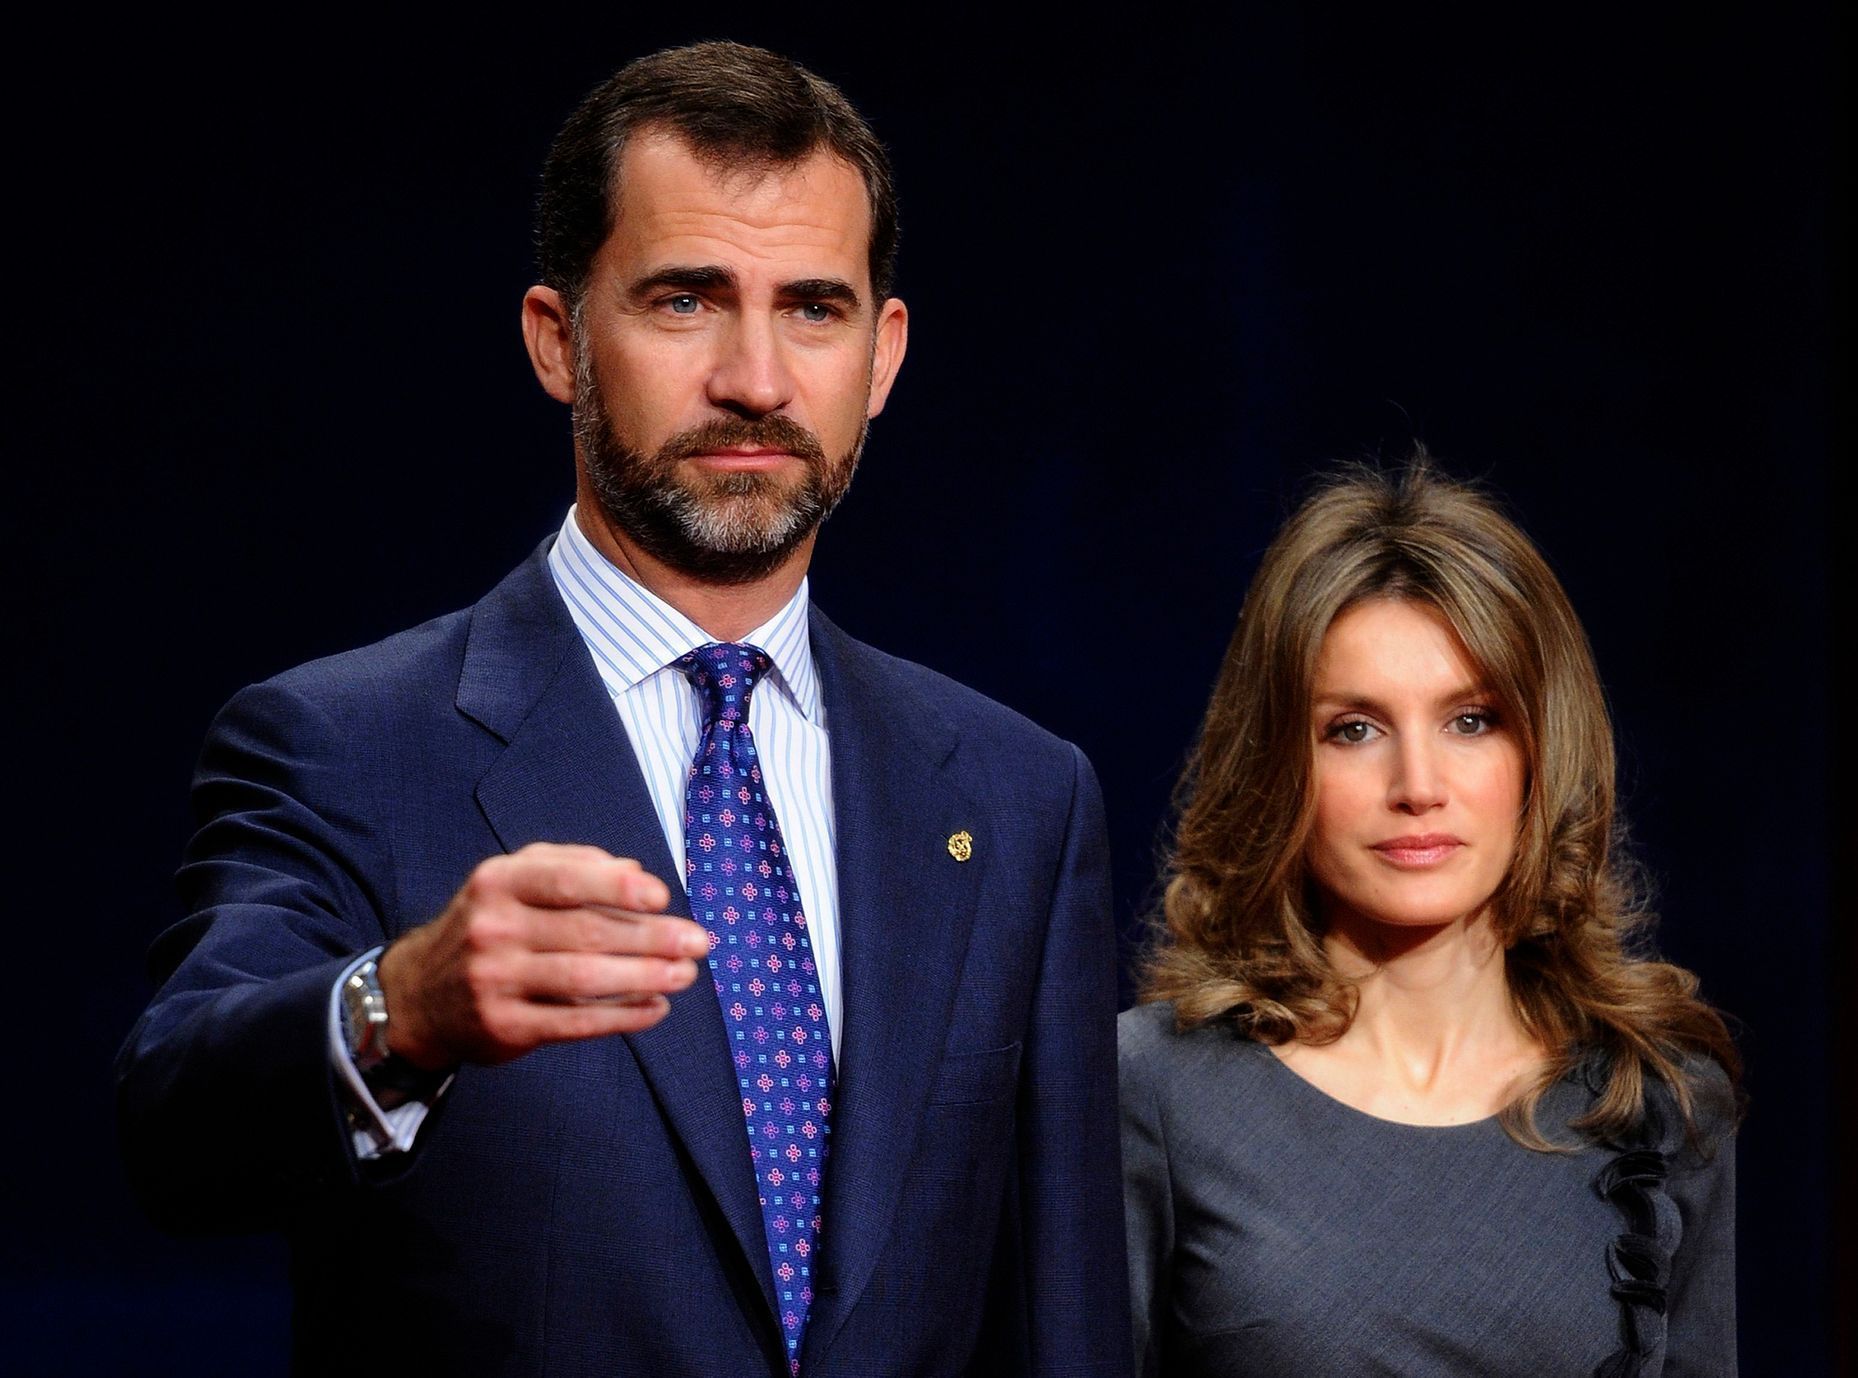 španělský princ Felipe a princezna Letizia